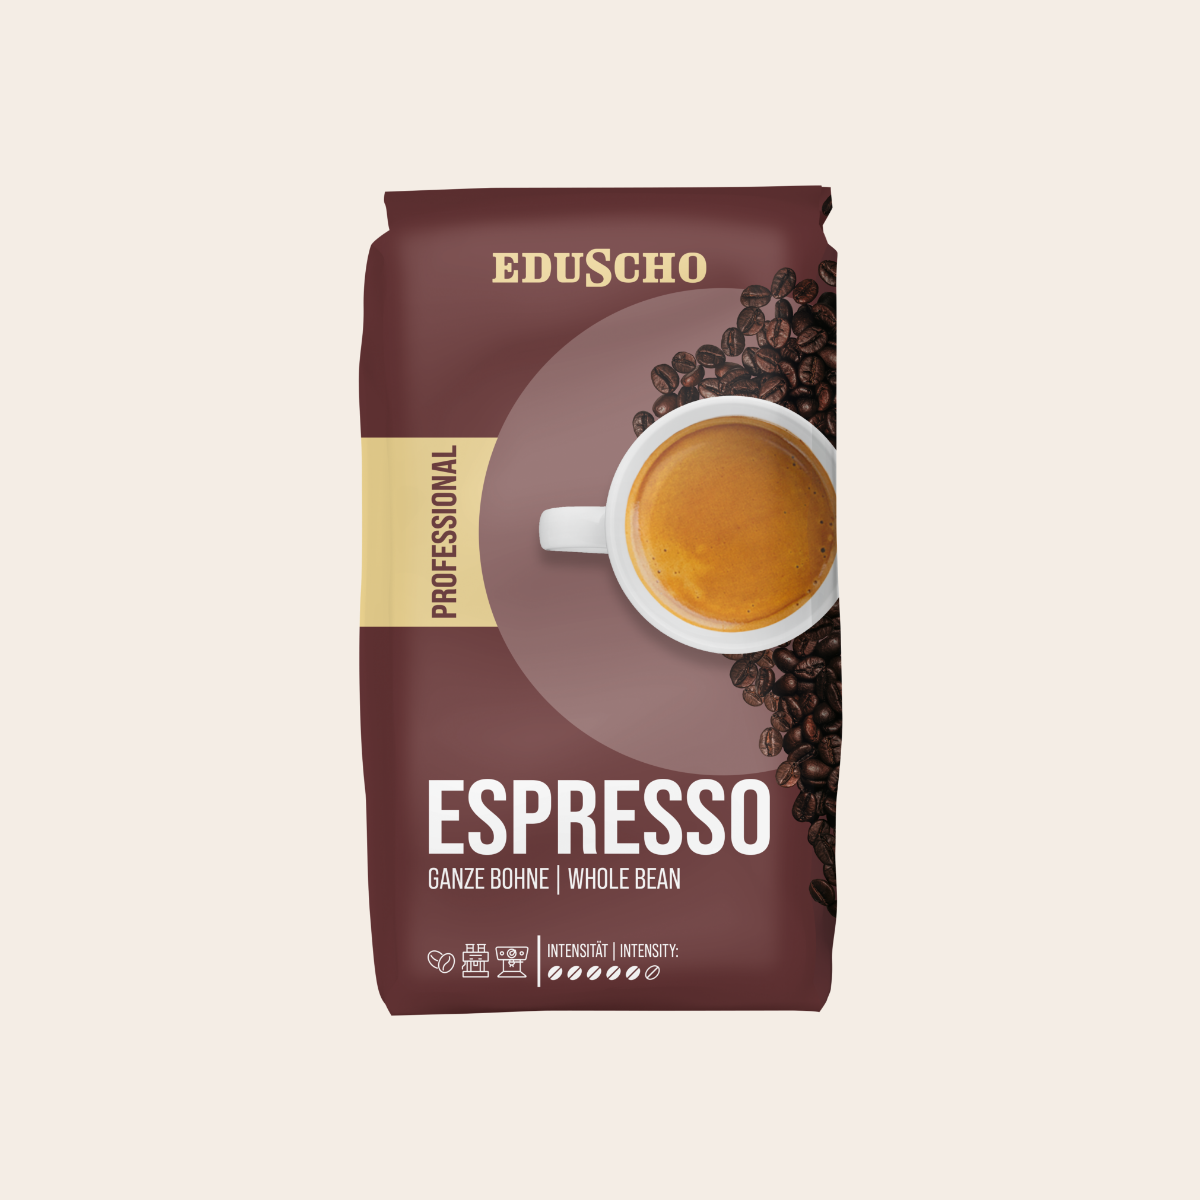 EDUSCHO Professional Espresso, 1.000g